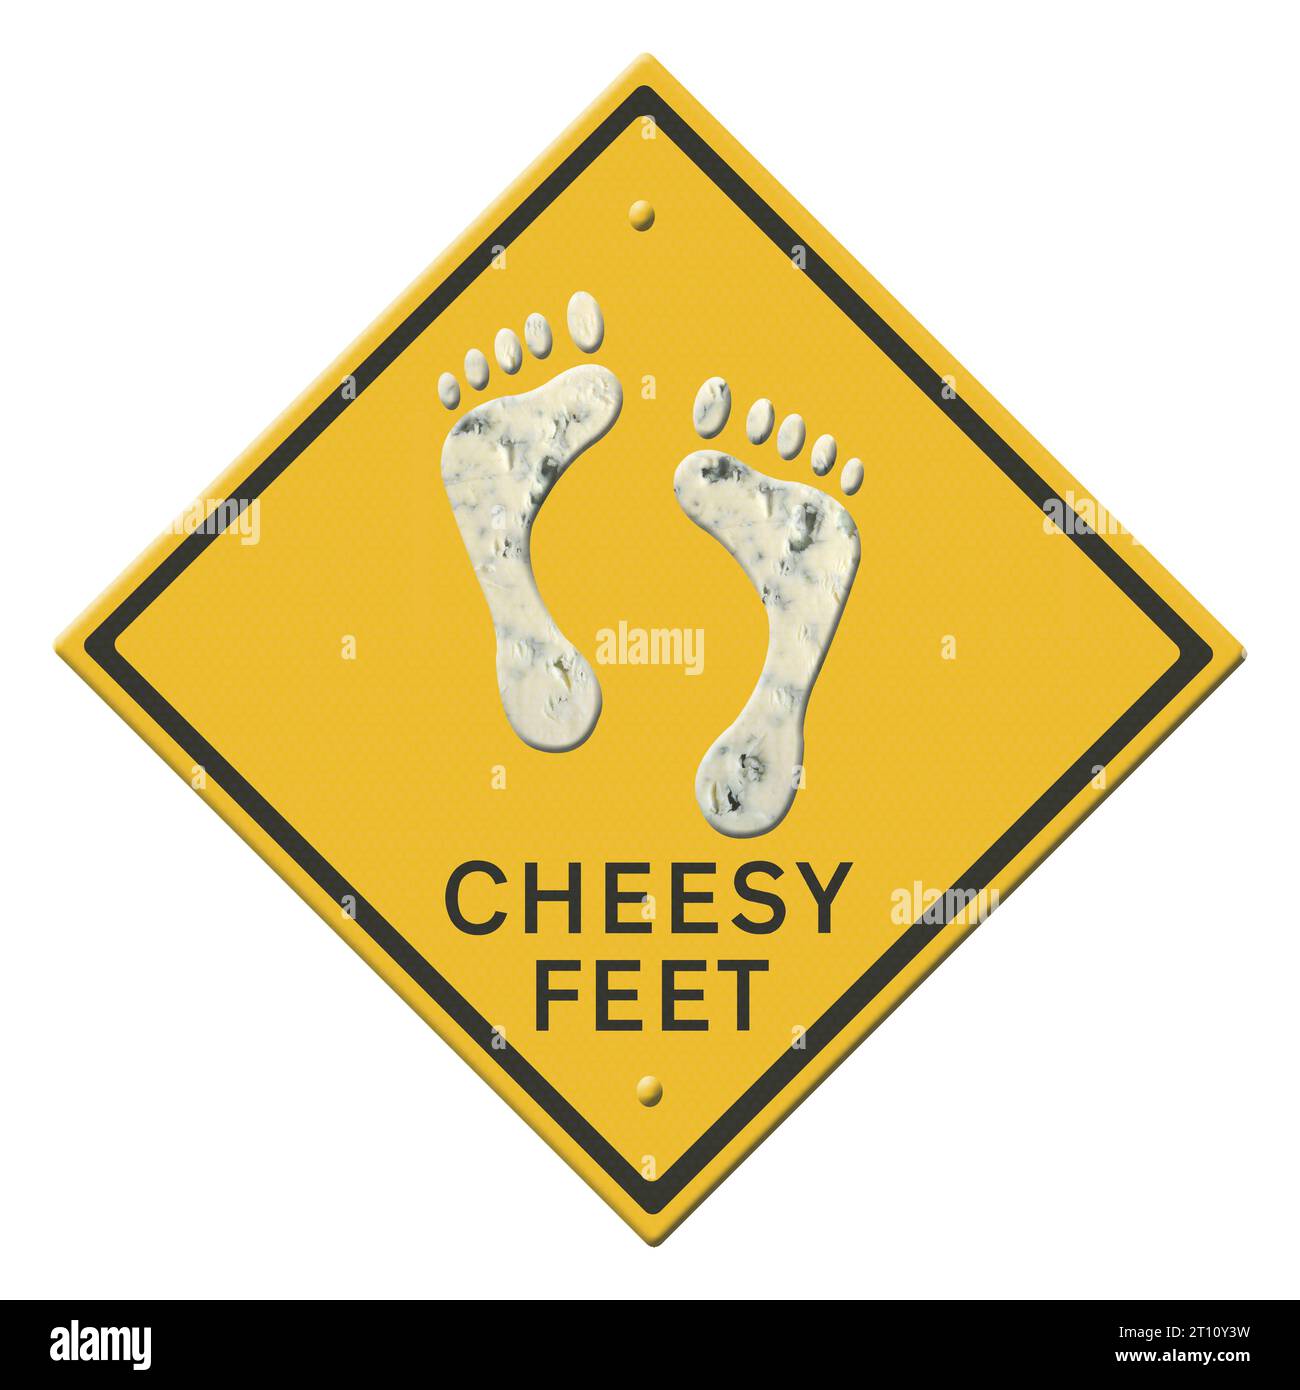 Abbildung – Warnschild für Cheesy Feet Animation der tanzenden Füße verfügbar. Studien haben gezeigt, dass der Geruch der Füße einer Reihe von Bakterien zugeschrieben werden kann, wobei Staphylokokken der Hauptverantwortliche für den Geruch sind. Es wird behauptet, dass Malariamücken, die Mücken tragen, eher von stinkenden Füßen angezogen werden. Quelle: Imago/Alamy Live News Stockfoto